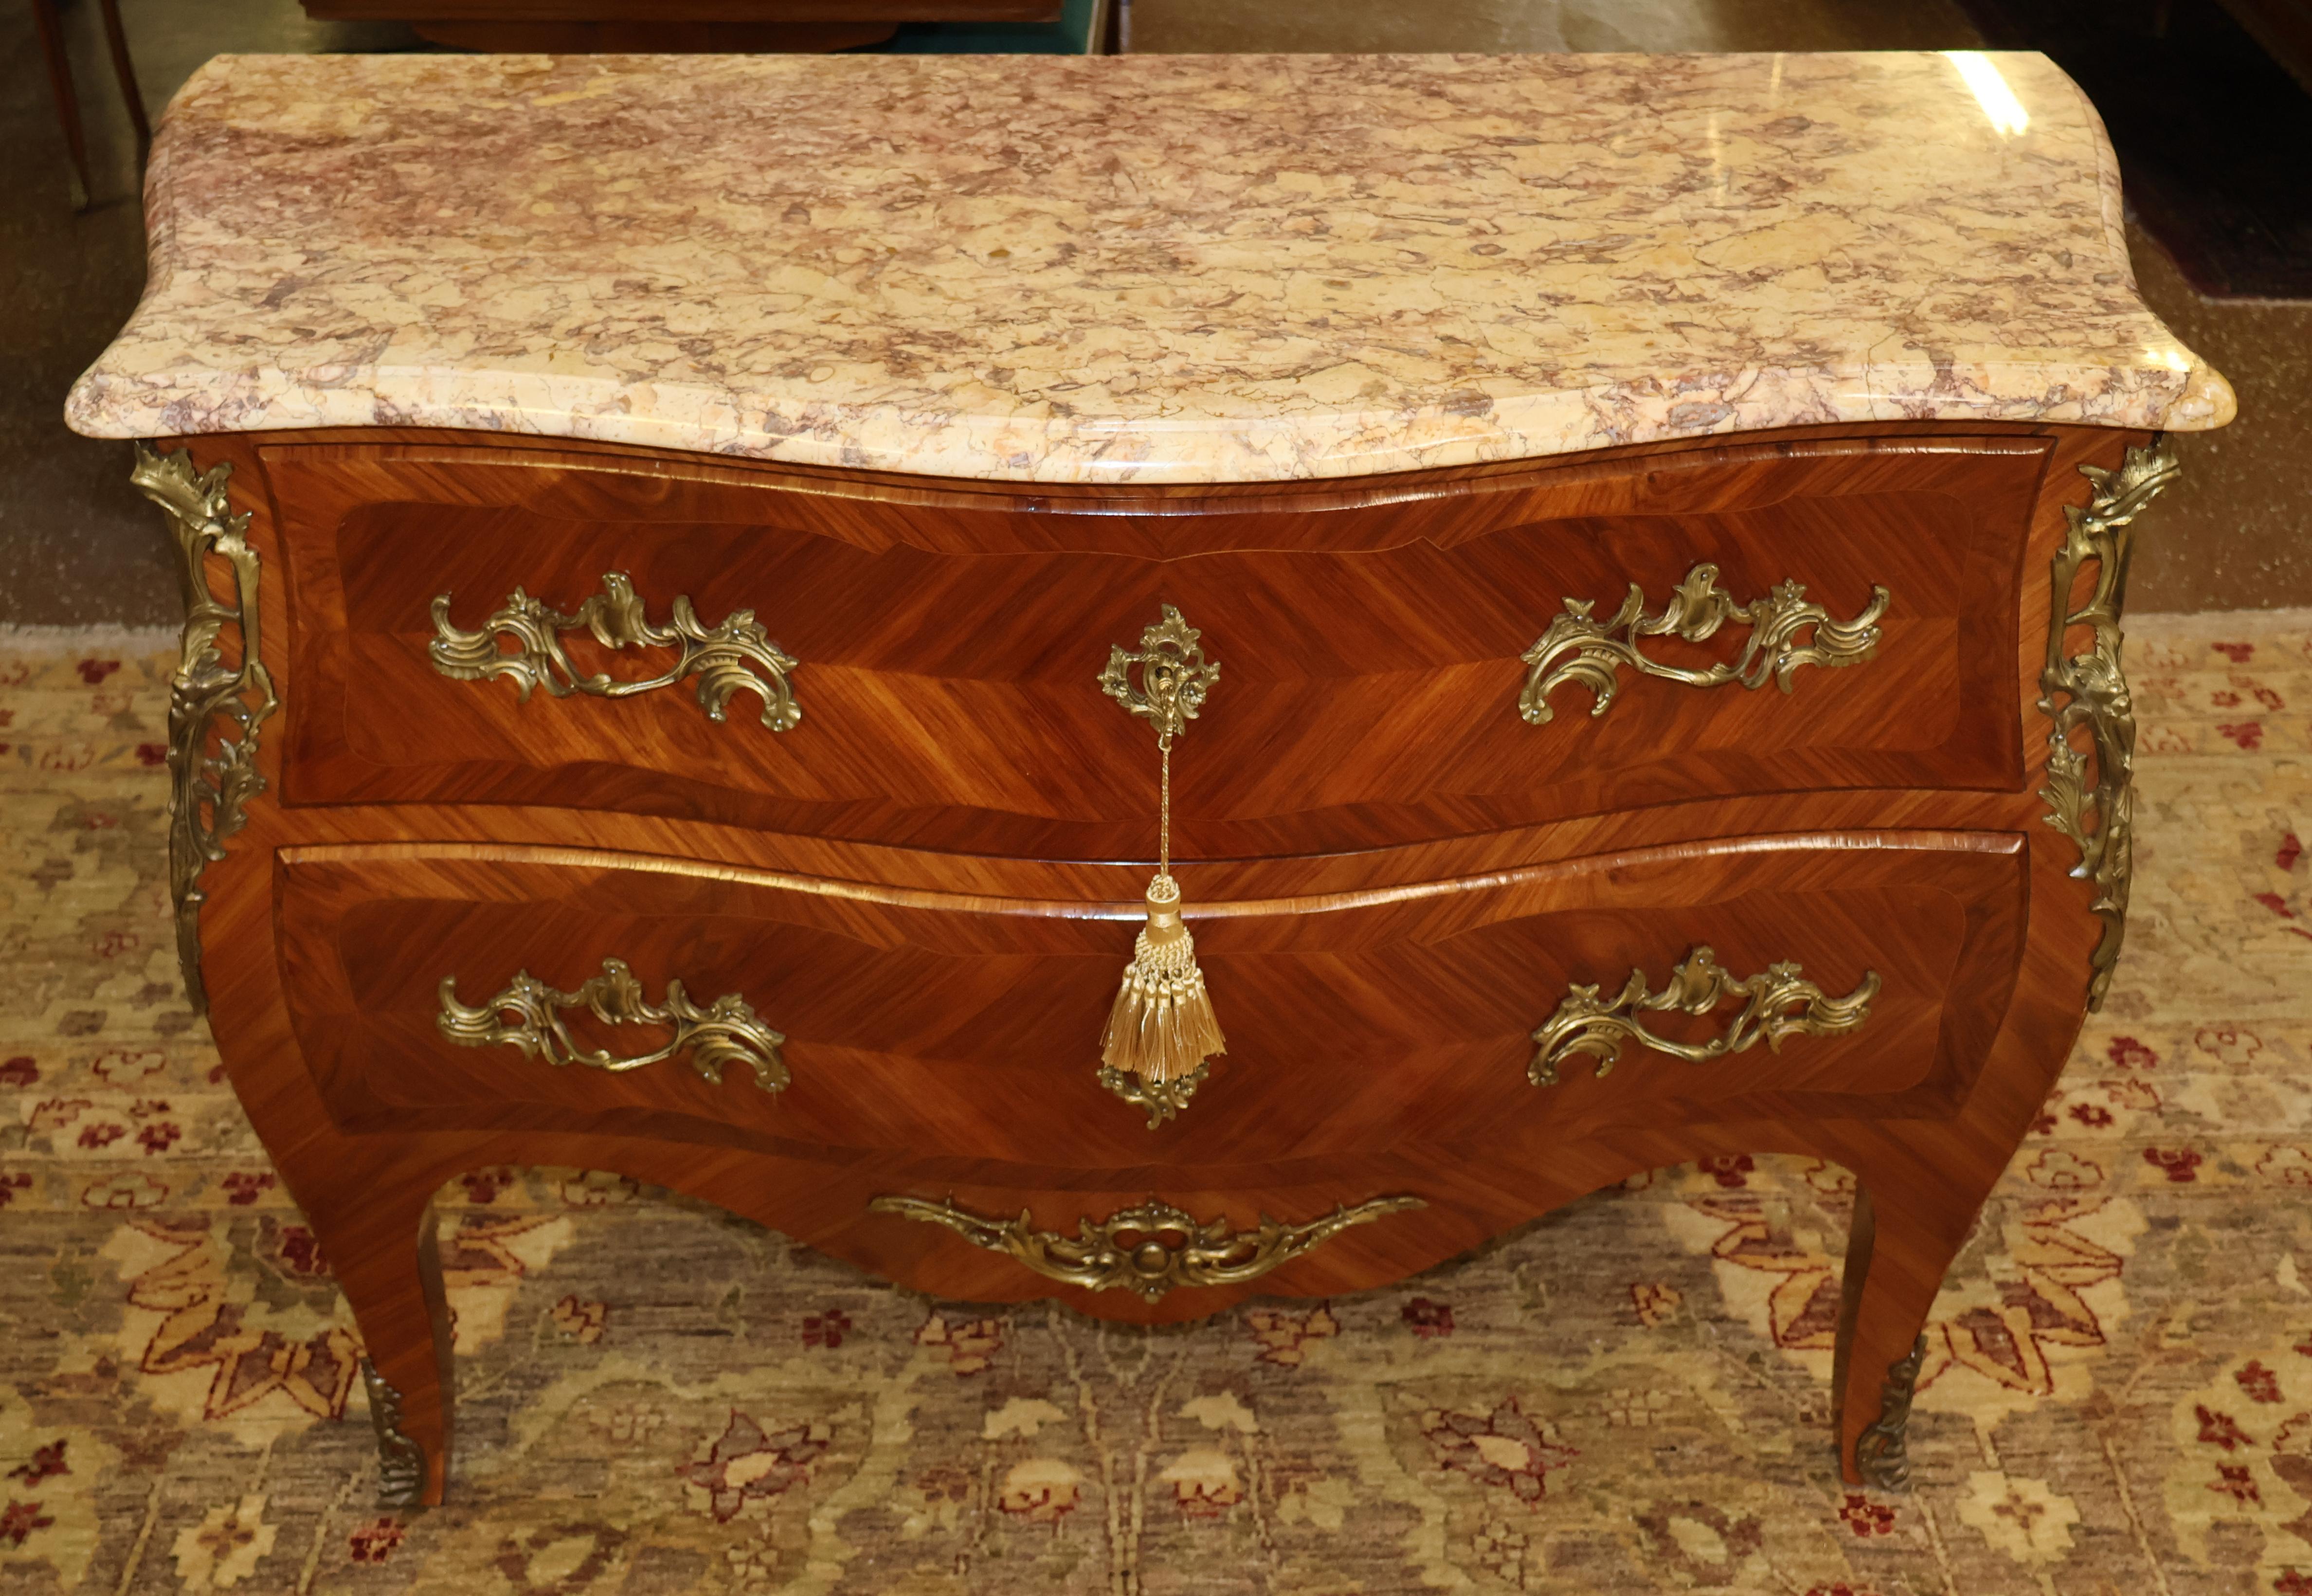 Commode en bois de roi de style Louis XV avec dessus en marbre Commode à tiroirs

Dimensions : 45